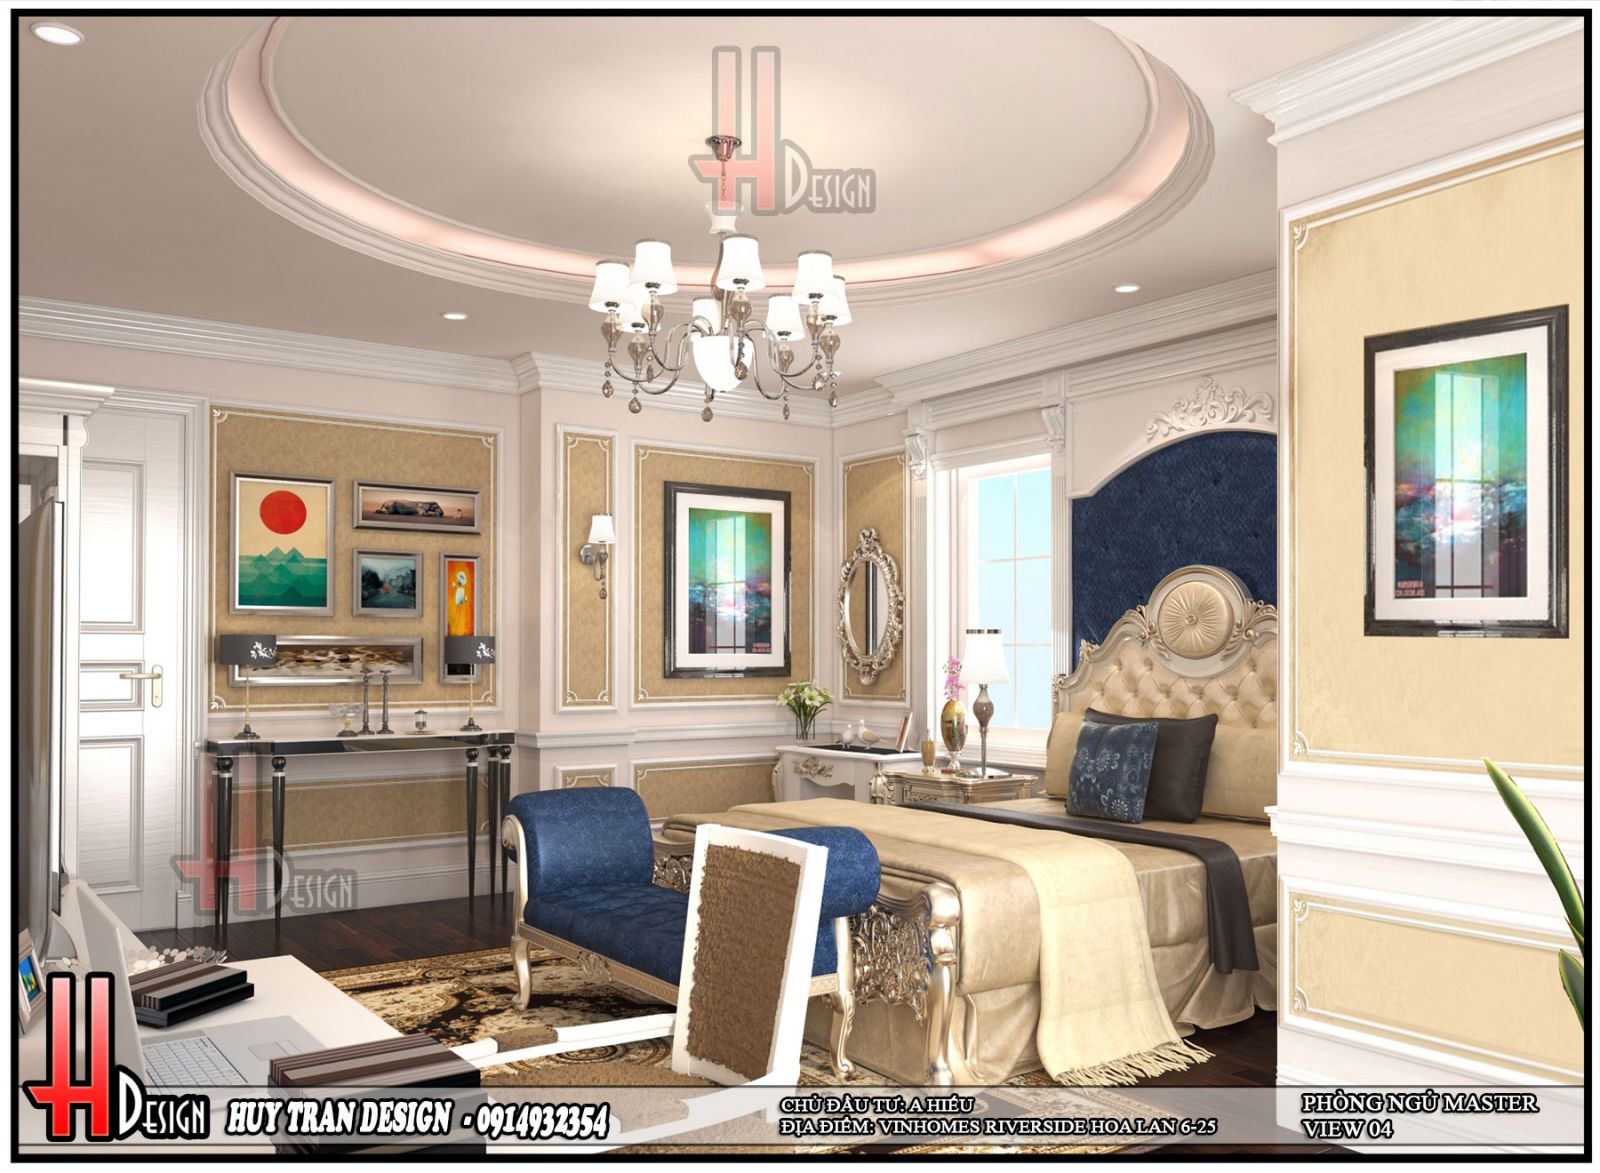 Phối cảnh thiết kế nội thất tân cổ điển phòng ngủ master biệt thự Hoa Lan - Vinhomes Riverside - Long Biên - Hà Nội-v4